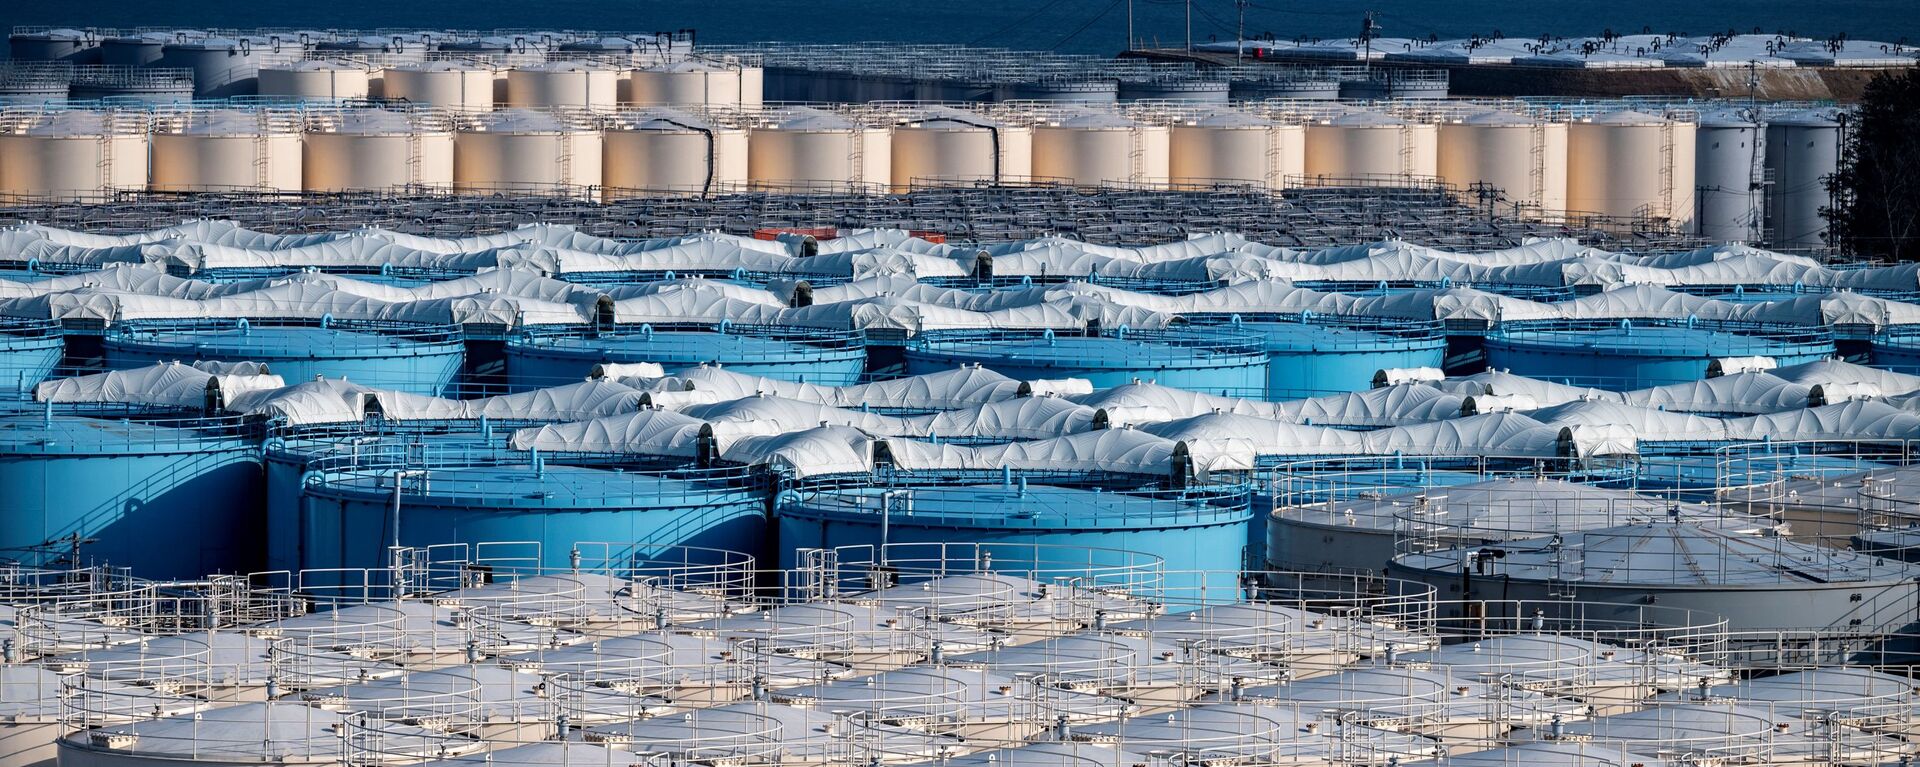 Резервуары для хранения загрязненной воды АЭС Фукусима - Sputnik 日本, 1920, 14.04.2021